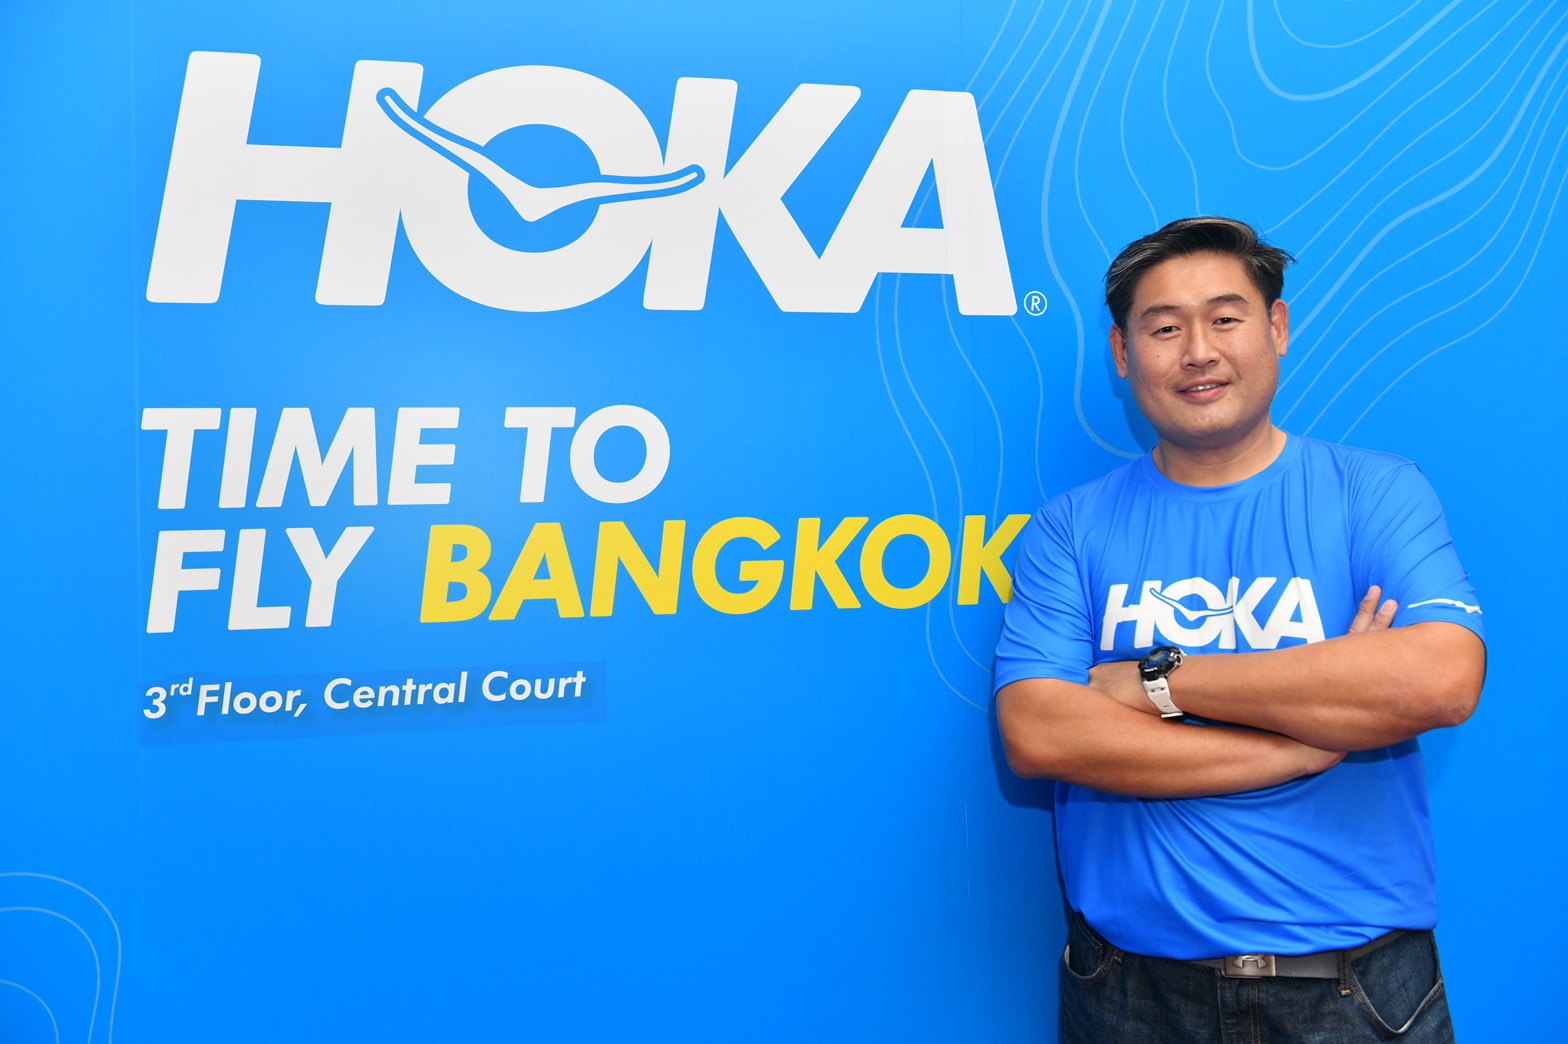 เรฟ อีดิชั่น เปิดตัว HOKA EXPERIENCE STORE แห่งแรกในประเทศไทย เอาใจสาวกสายวิ่ง พร้อมชวนสัมผัสประสบการณ์ใหม่สุดพิเศษ